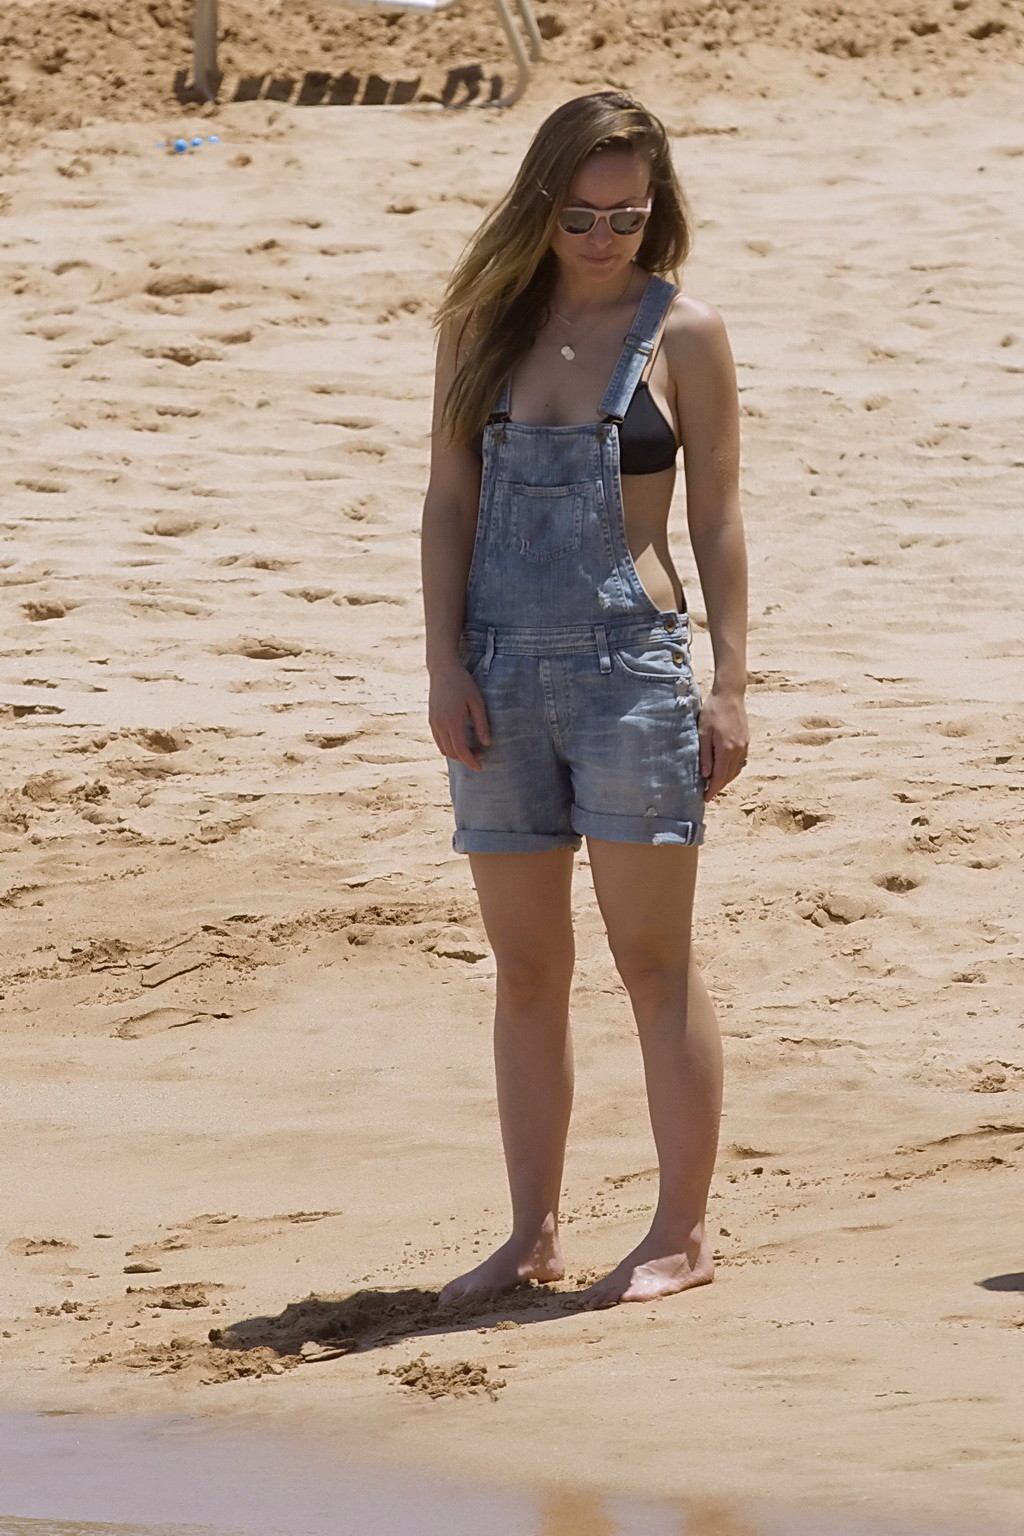 Olivia Wilde tetona en bikini negro y mono en una playa
 #75143621